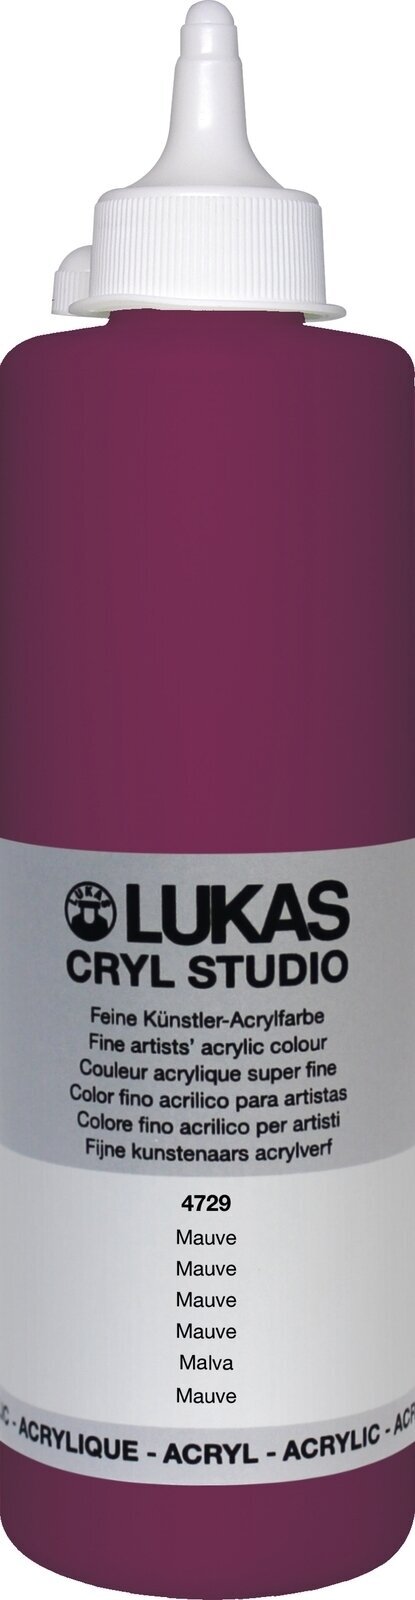 Akrilna barva Lukas Cryl Studio Akrilna barva 500 ml Mauve